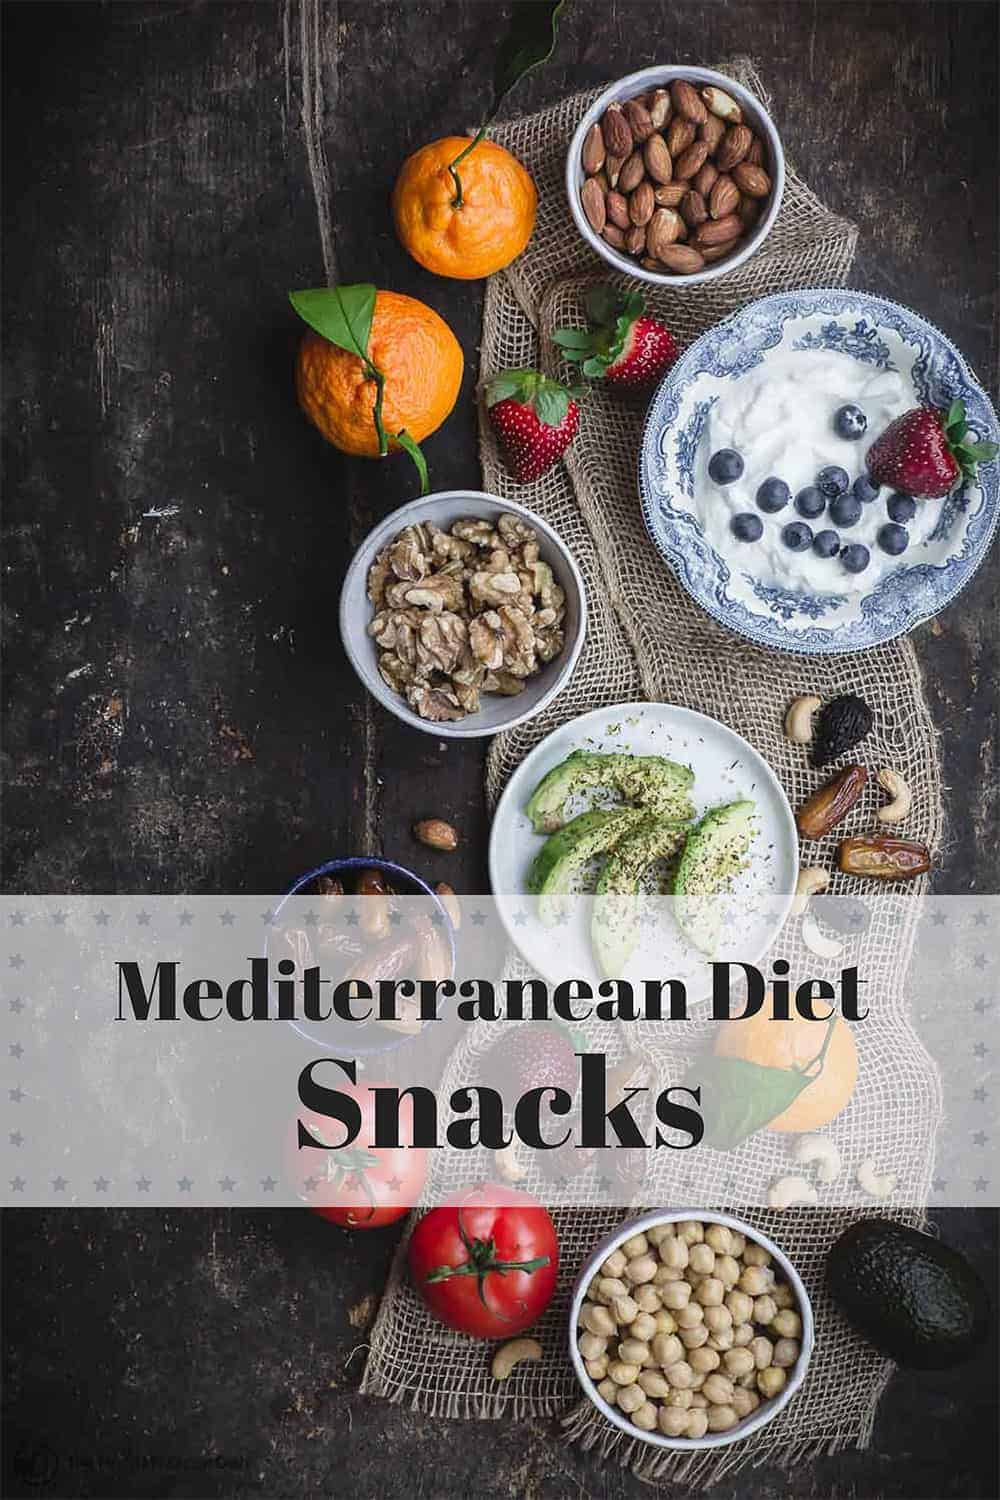 Mediterranean Diet Snacks ideas including, nuts, dried fruit, fresh fruit, avocados, tomatoes, Greek yogurt